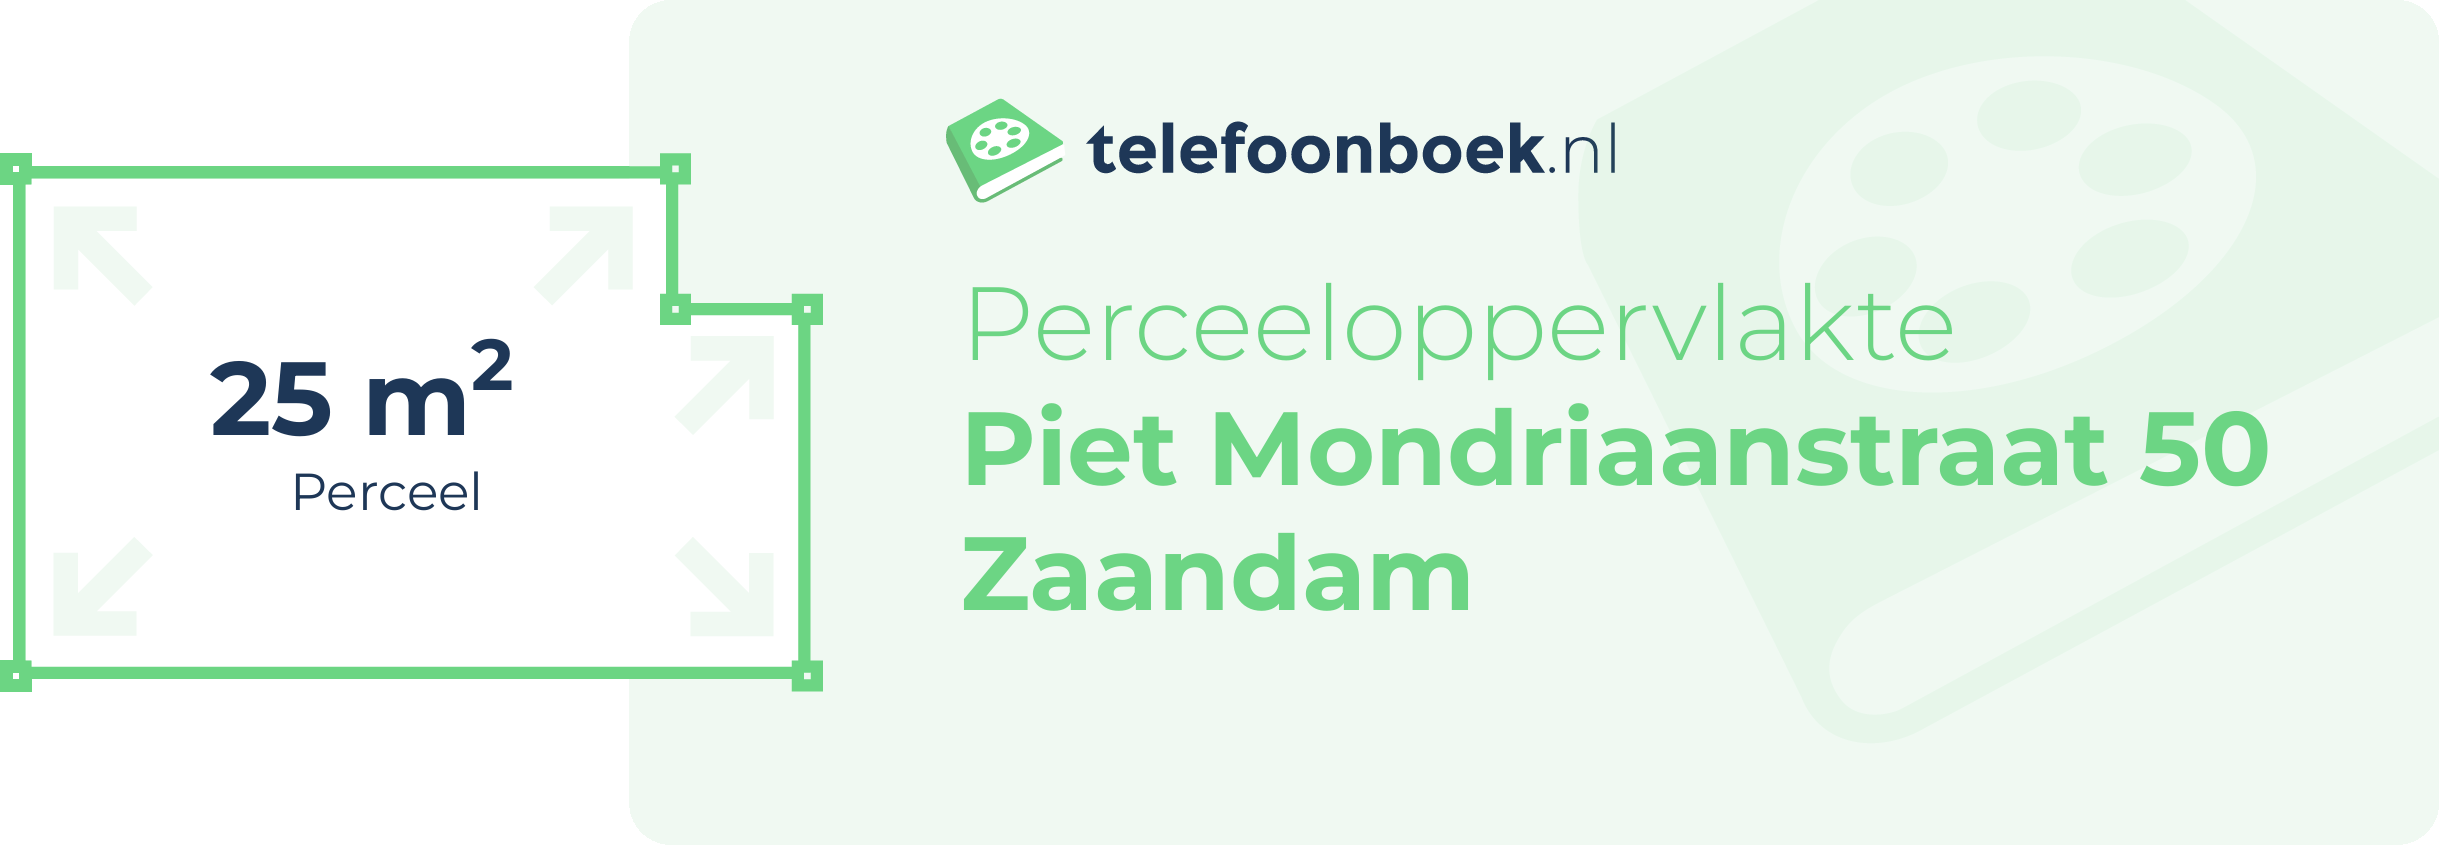 Perceeloppervlakte Piet Mondriaanstraat 50 Zaandam